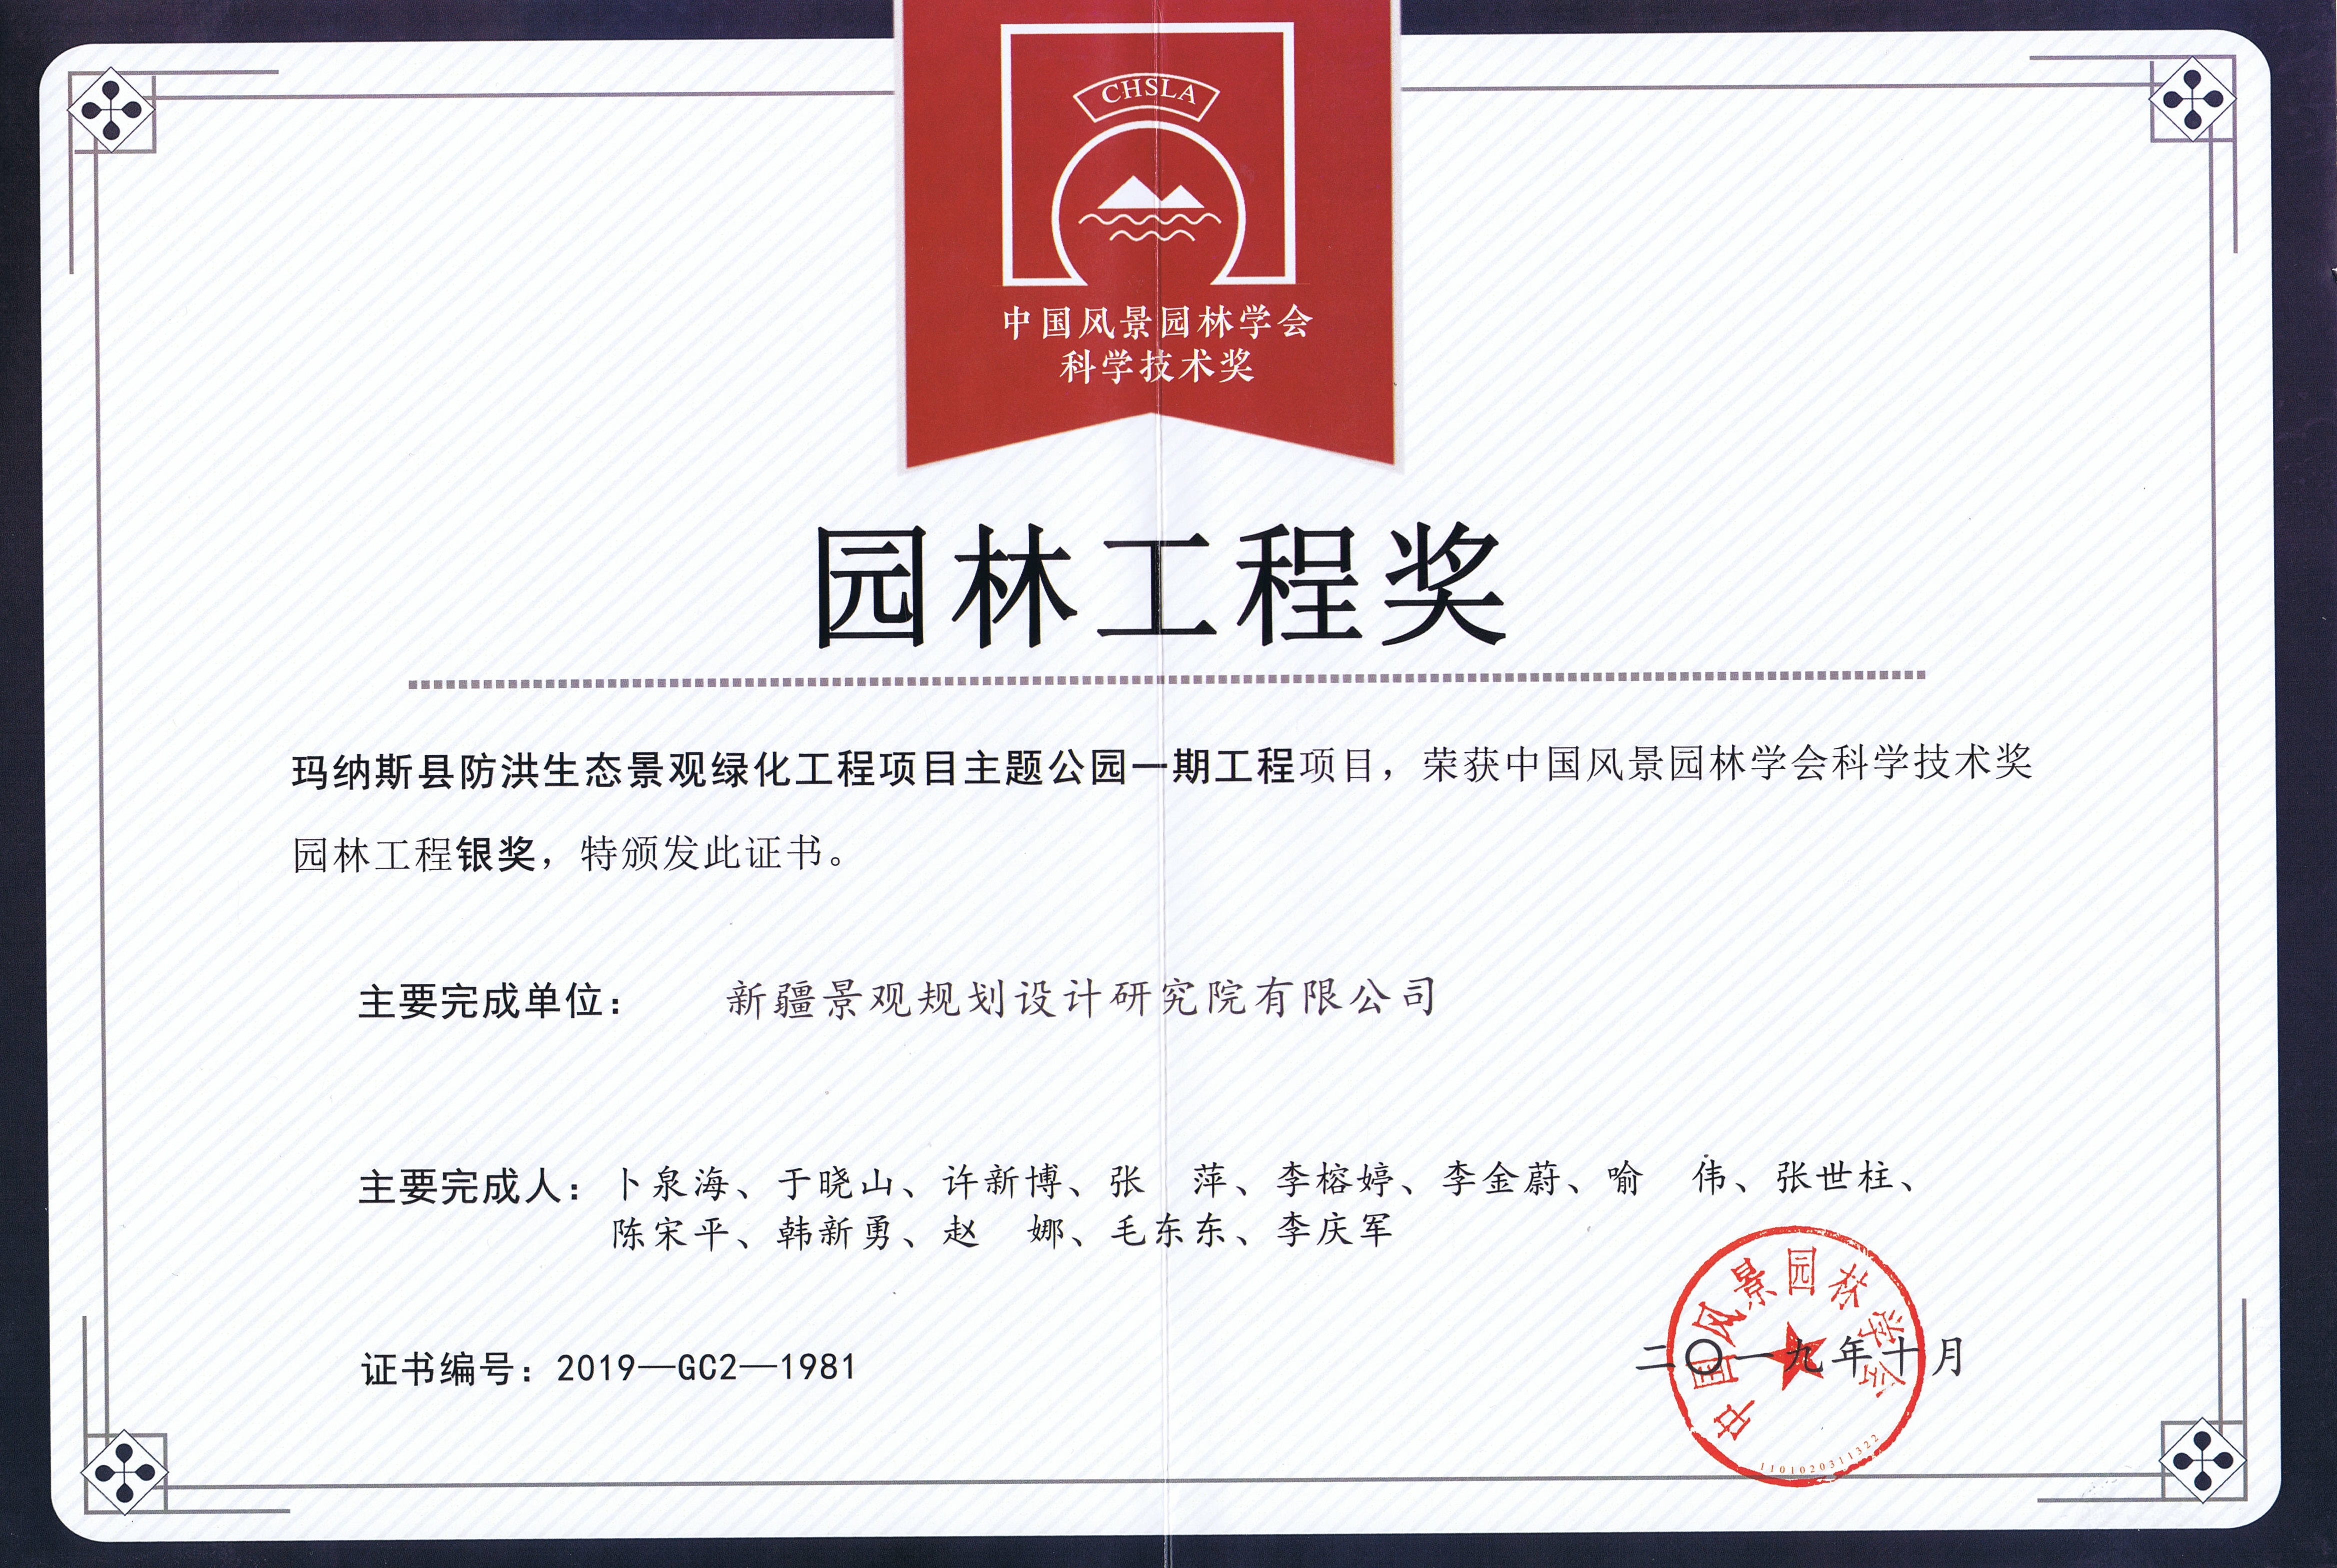 中国风景园林学会科学技术奖园林工程银奖